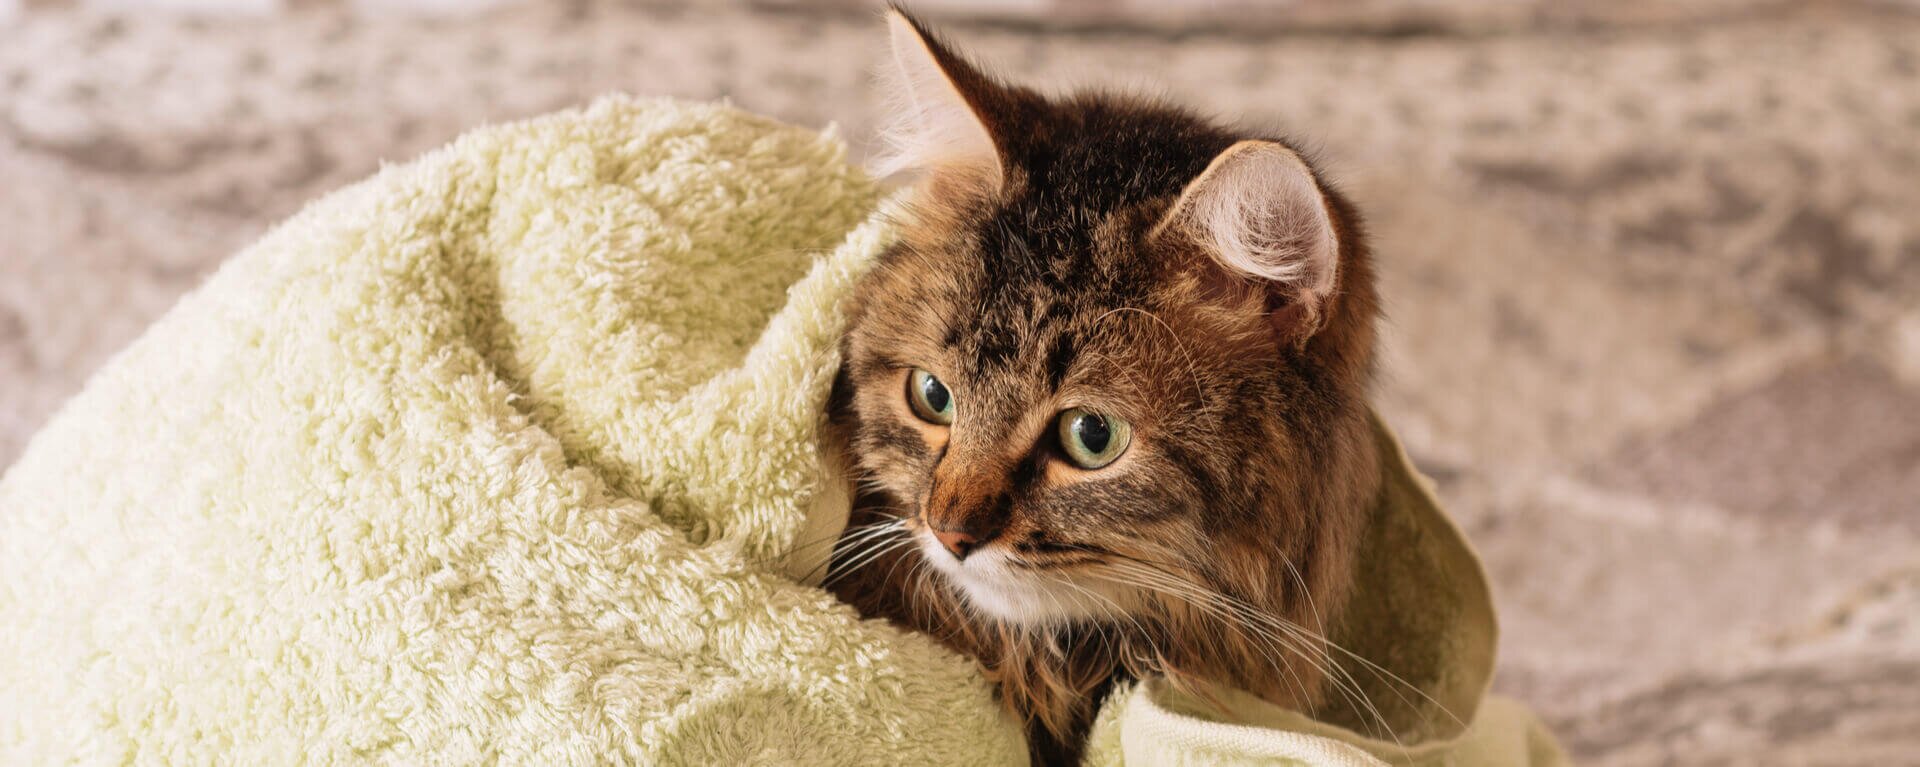 Как мыть кошку правильно: советы по купанию кошки в домашних условиях